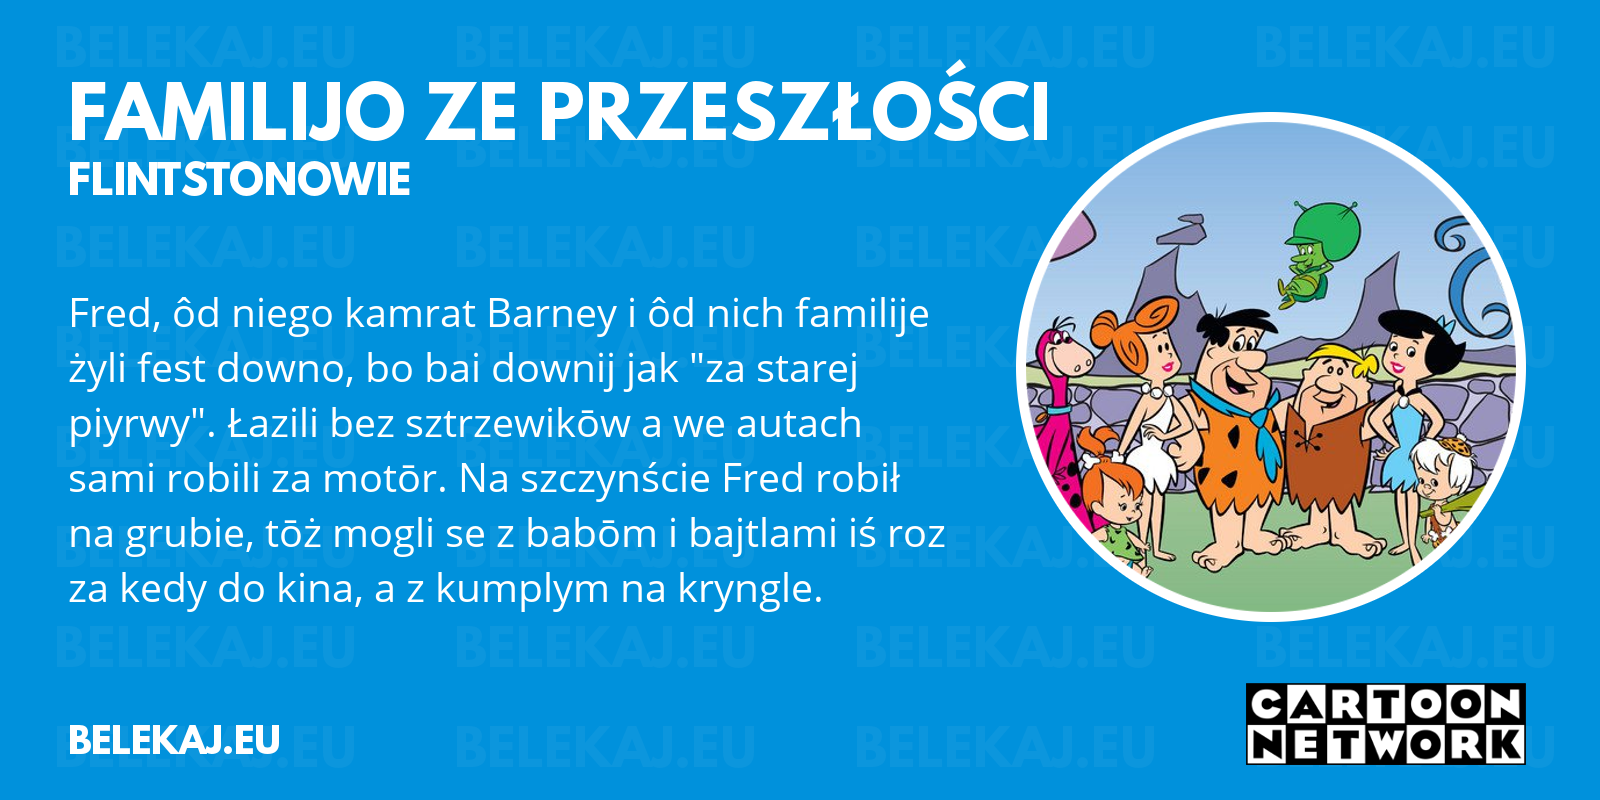 Flintstonowie, Cartoon Network po śląsku - blog bele kaj